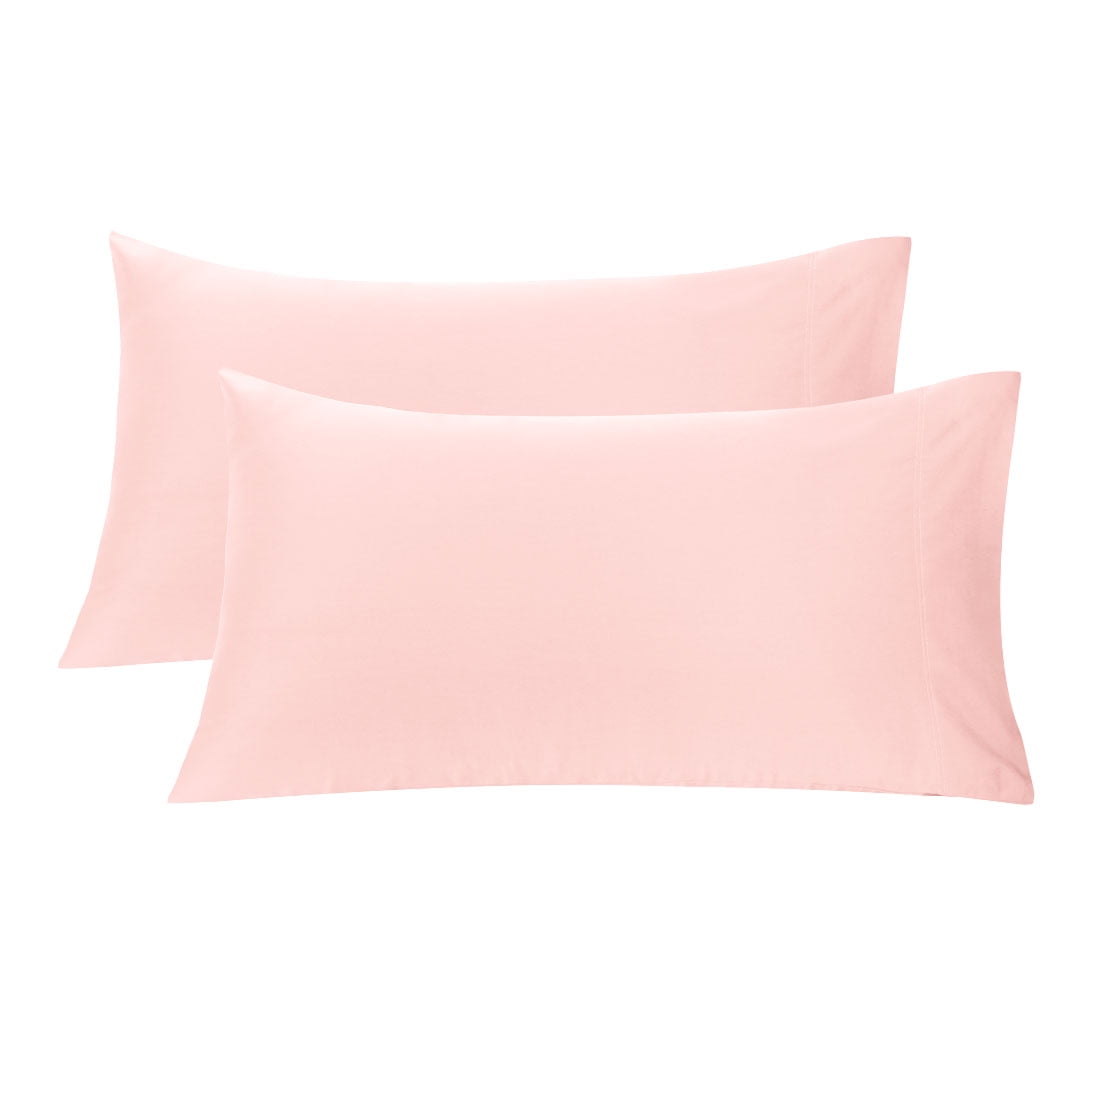 Unique Bargains 2pc pk Long Staple Combed Cotton Pillowcases Pink ...